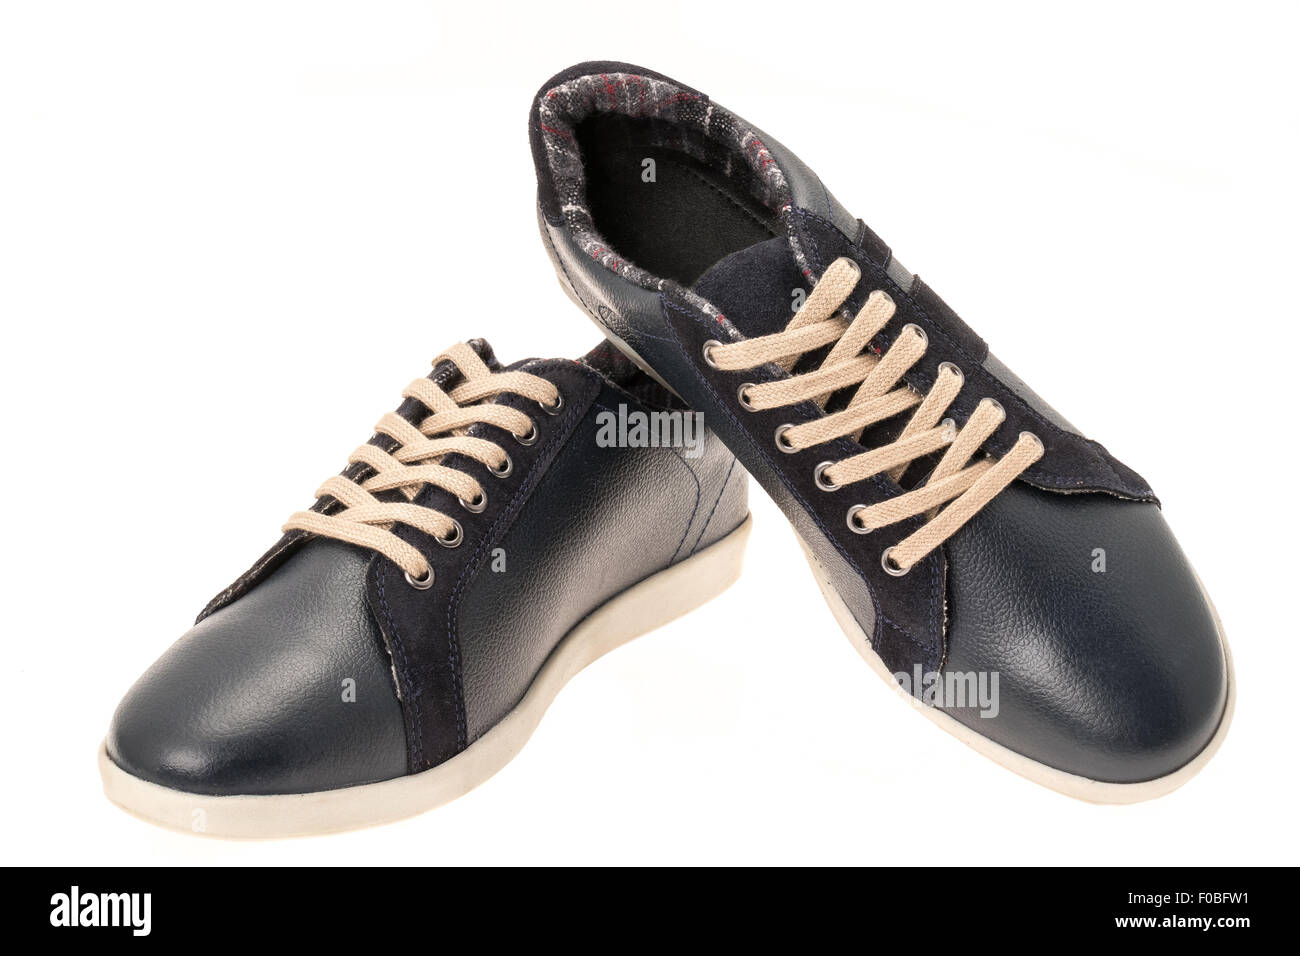 En cuir noir chaussures de sport occasionnels - isolated on white Banque D'Images